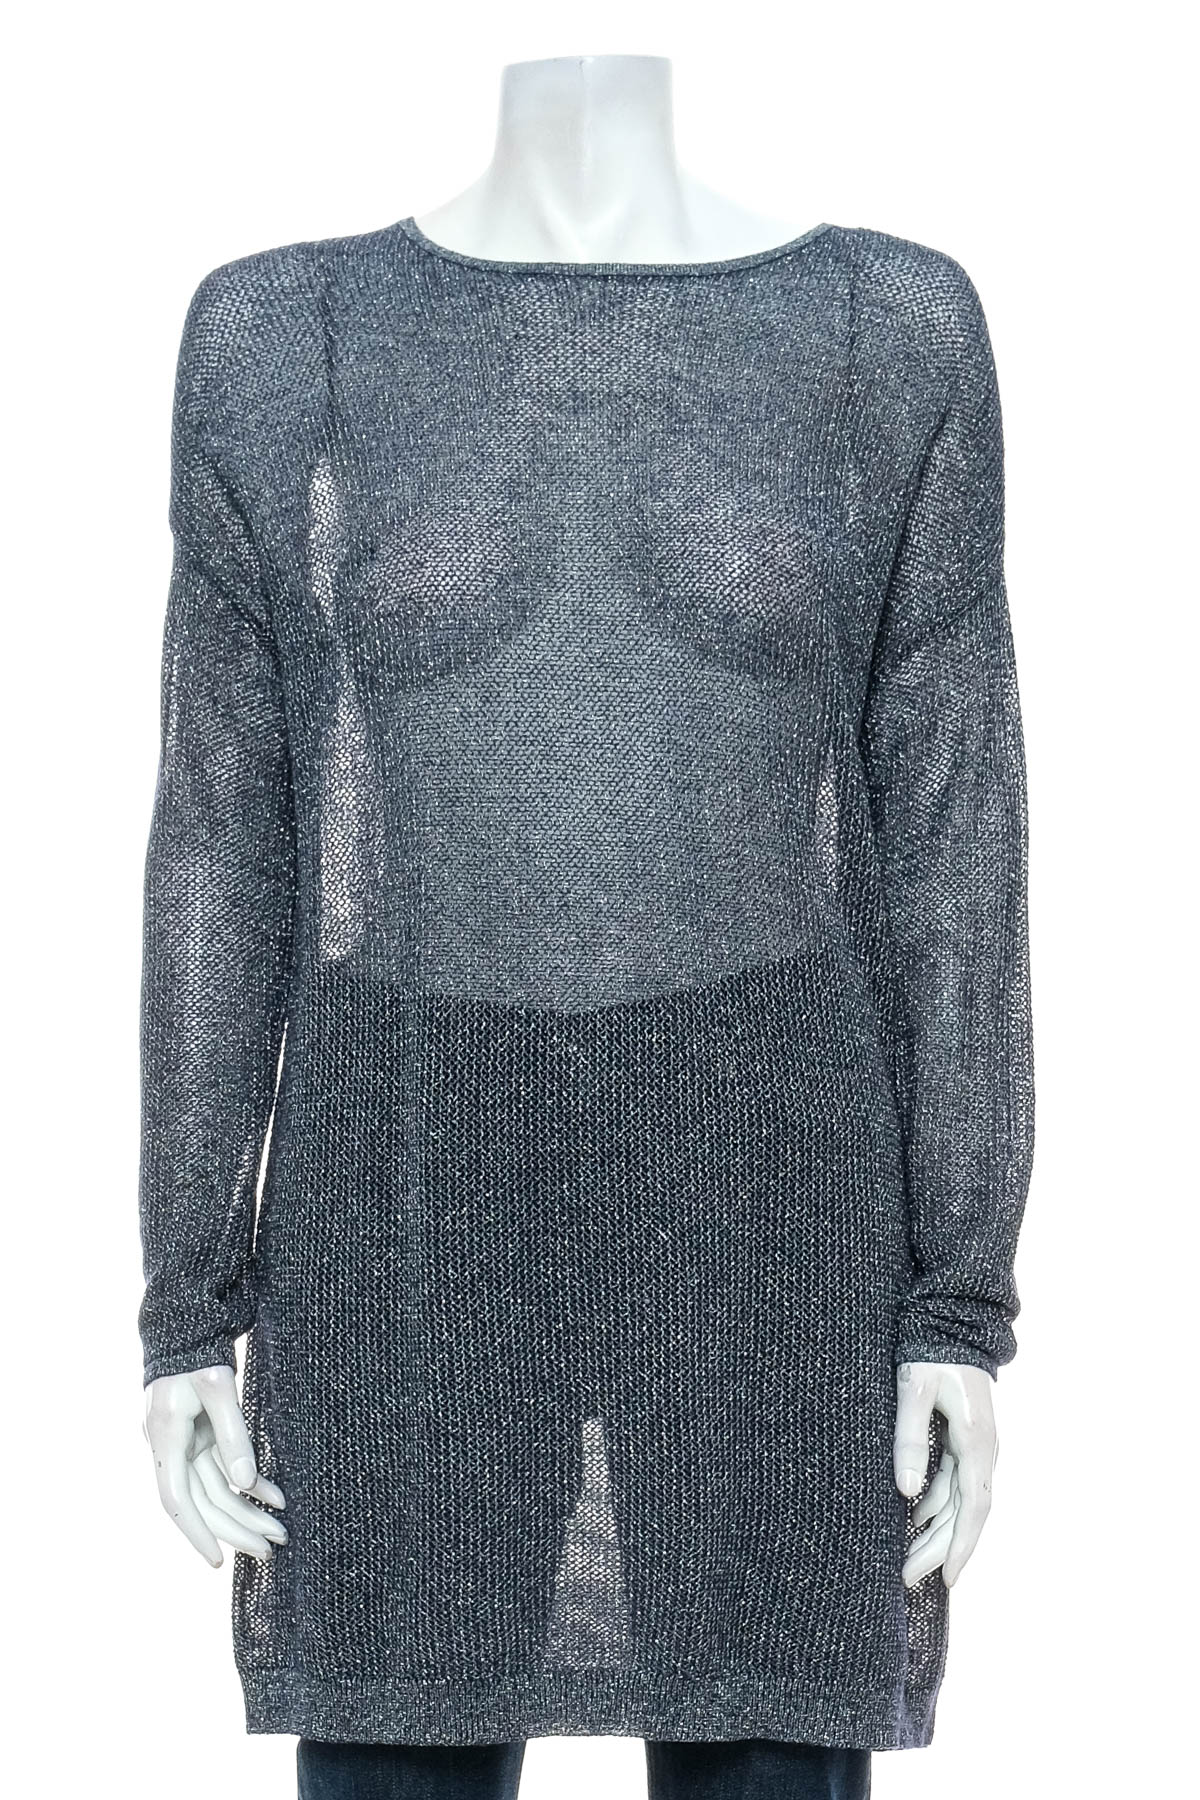 Women's sweater - Solar - 0